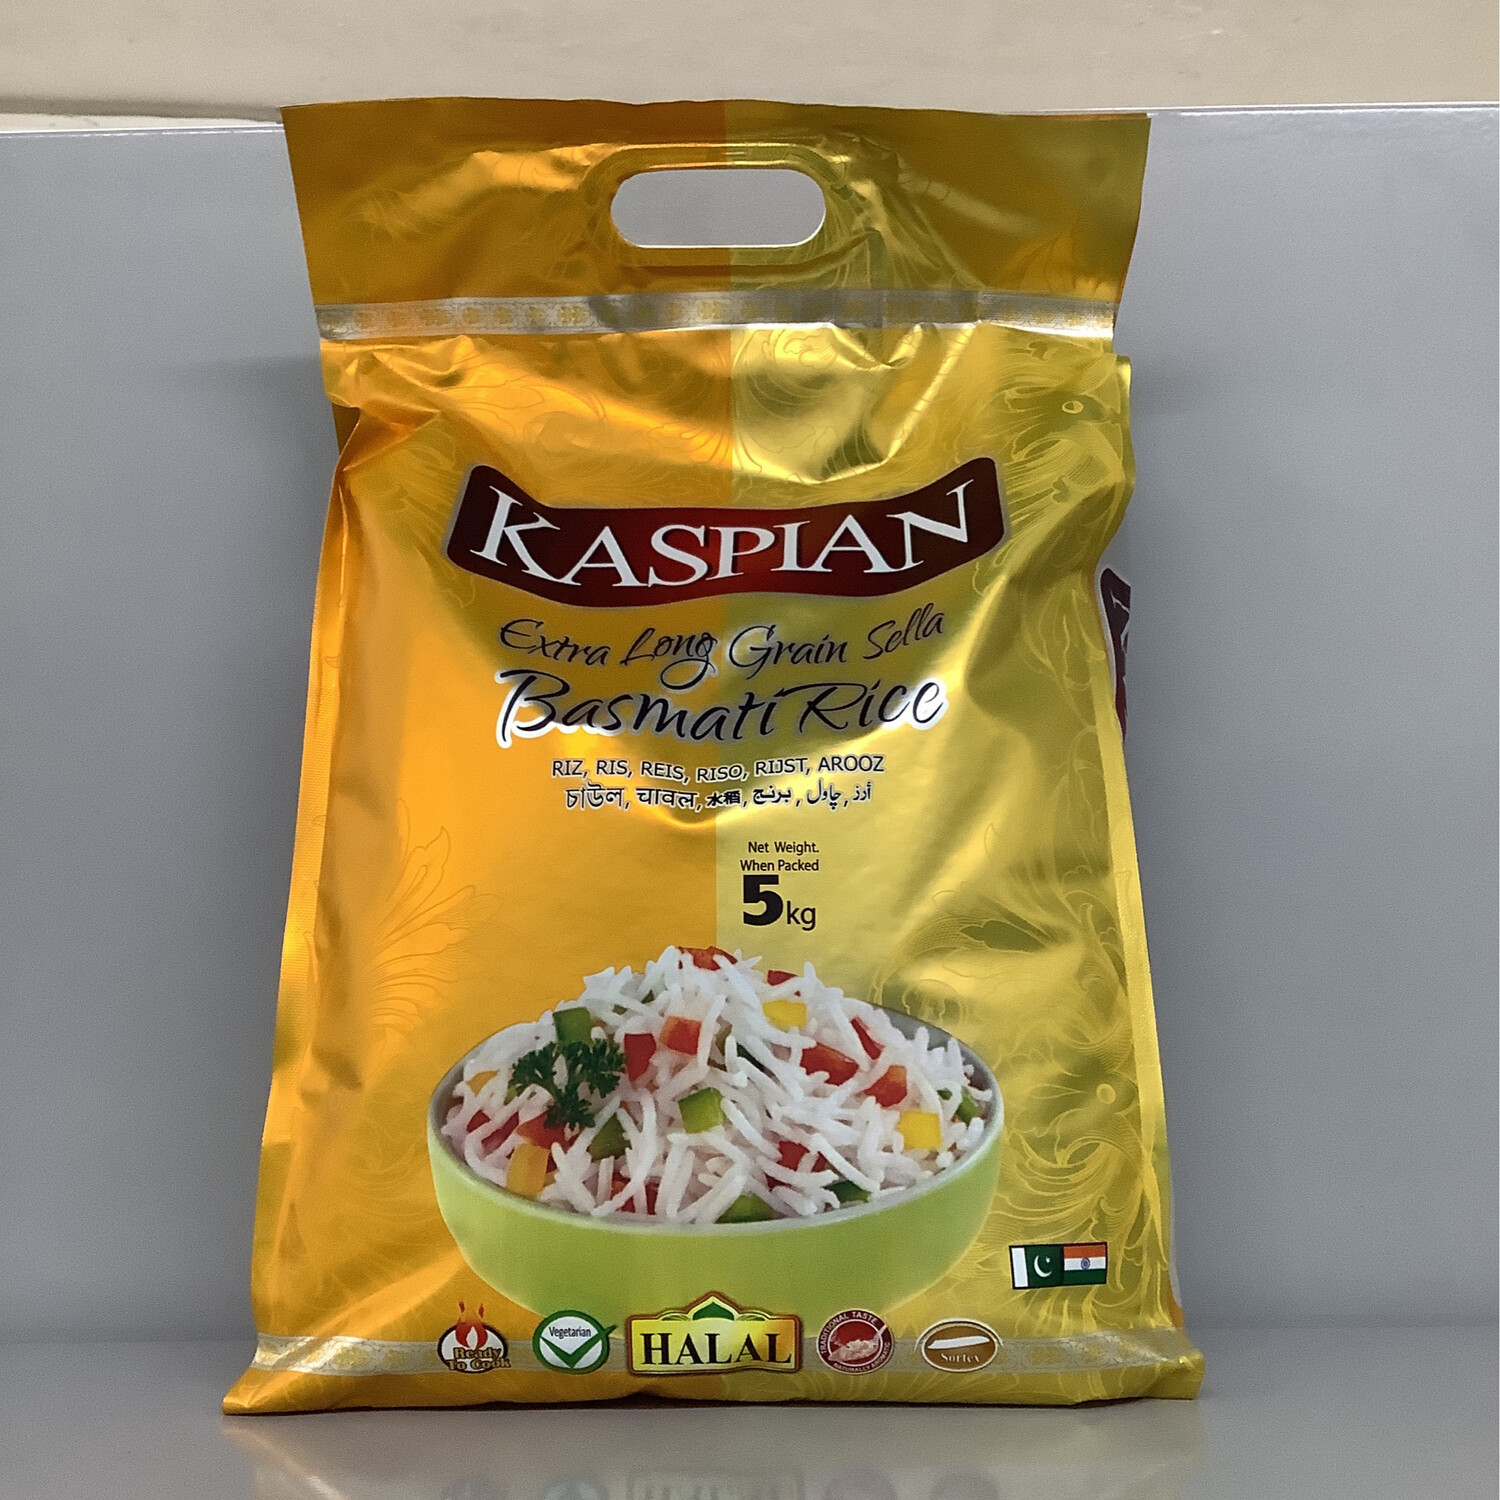 Kaspian Extra Long Grain Sella Basmati Rice 5kg